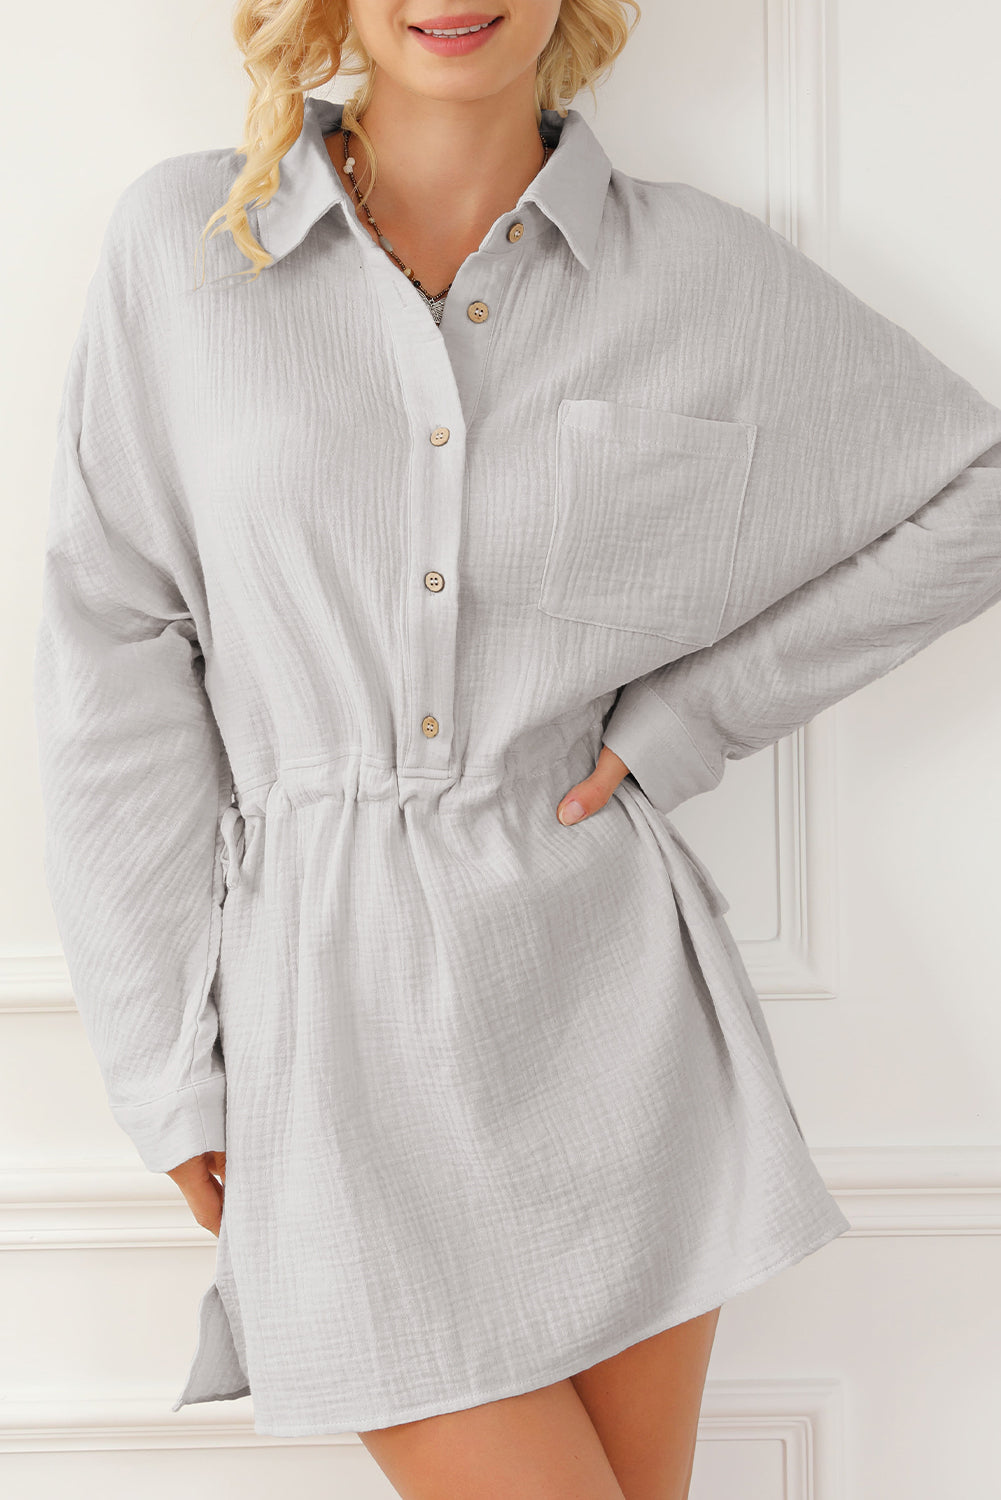 Robe texturée grise à manches retroussées et boutonnée avec cordon de serrage